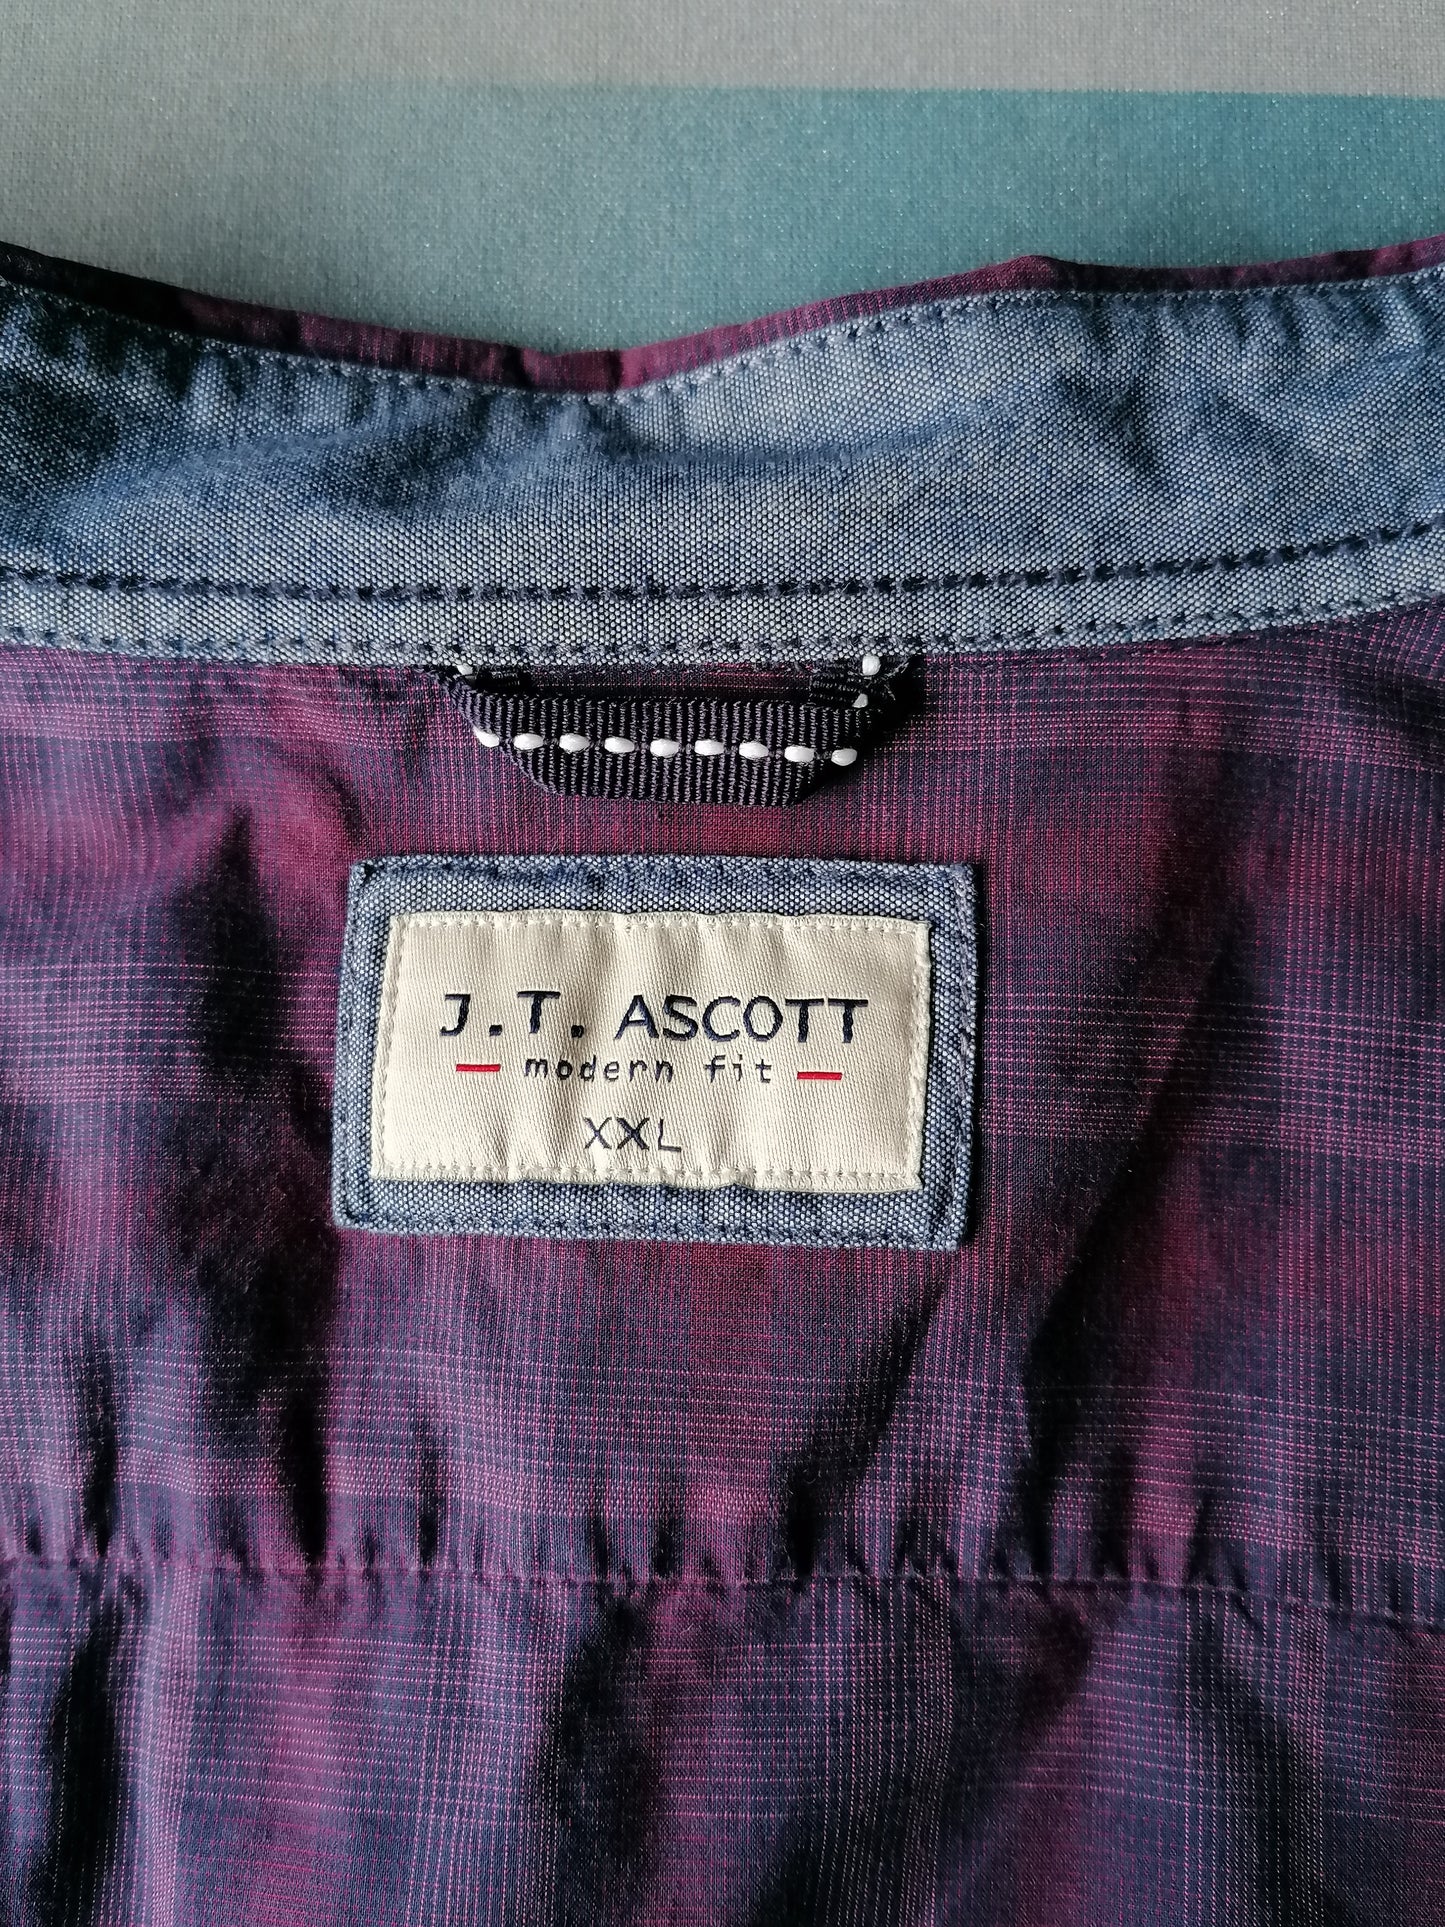 J.T. Ascott overhemd. Paars geruit motief. Maat XXL / 2XL